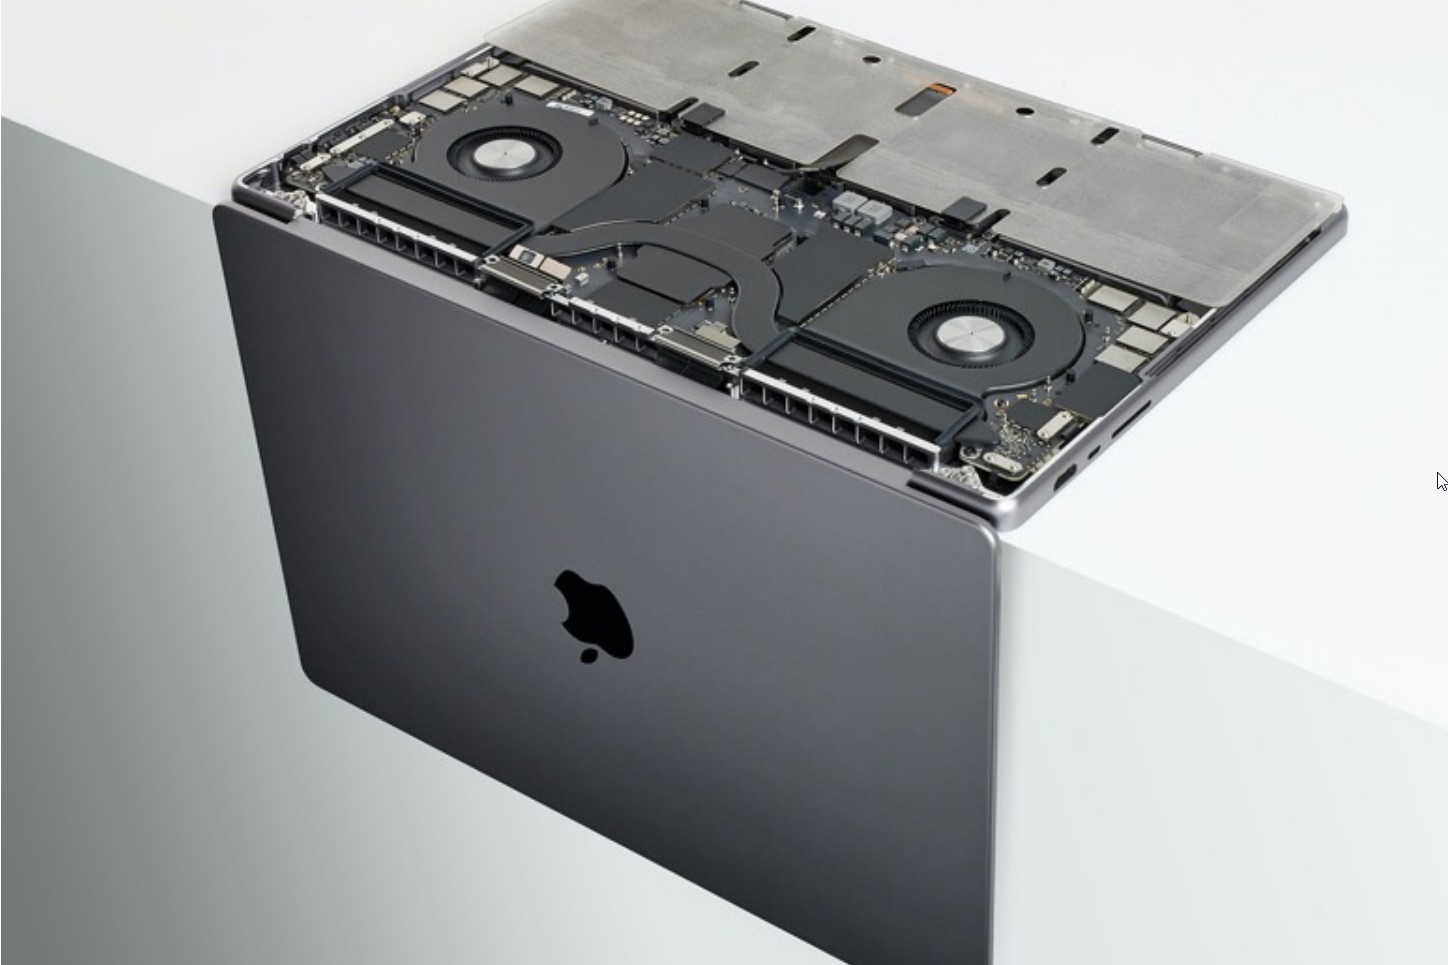 Est-ce une erreur ? Le MacBook Air M1 d'Apple est à son prix le plus bas  jamais enregistré depuis plus de 2 ans sur  ! 